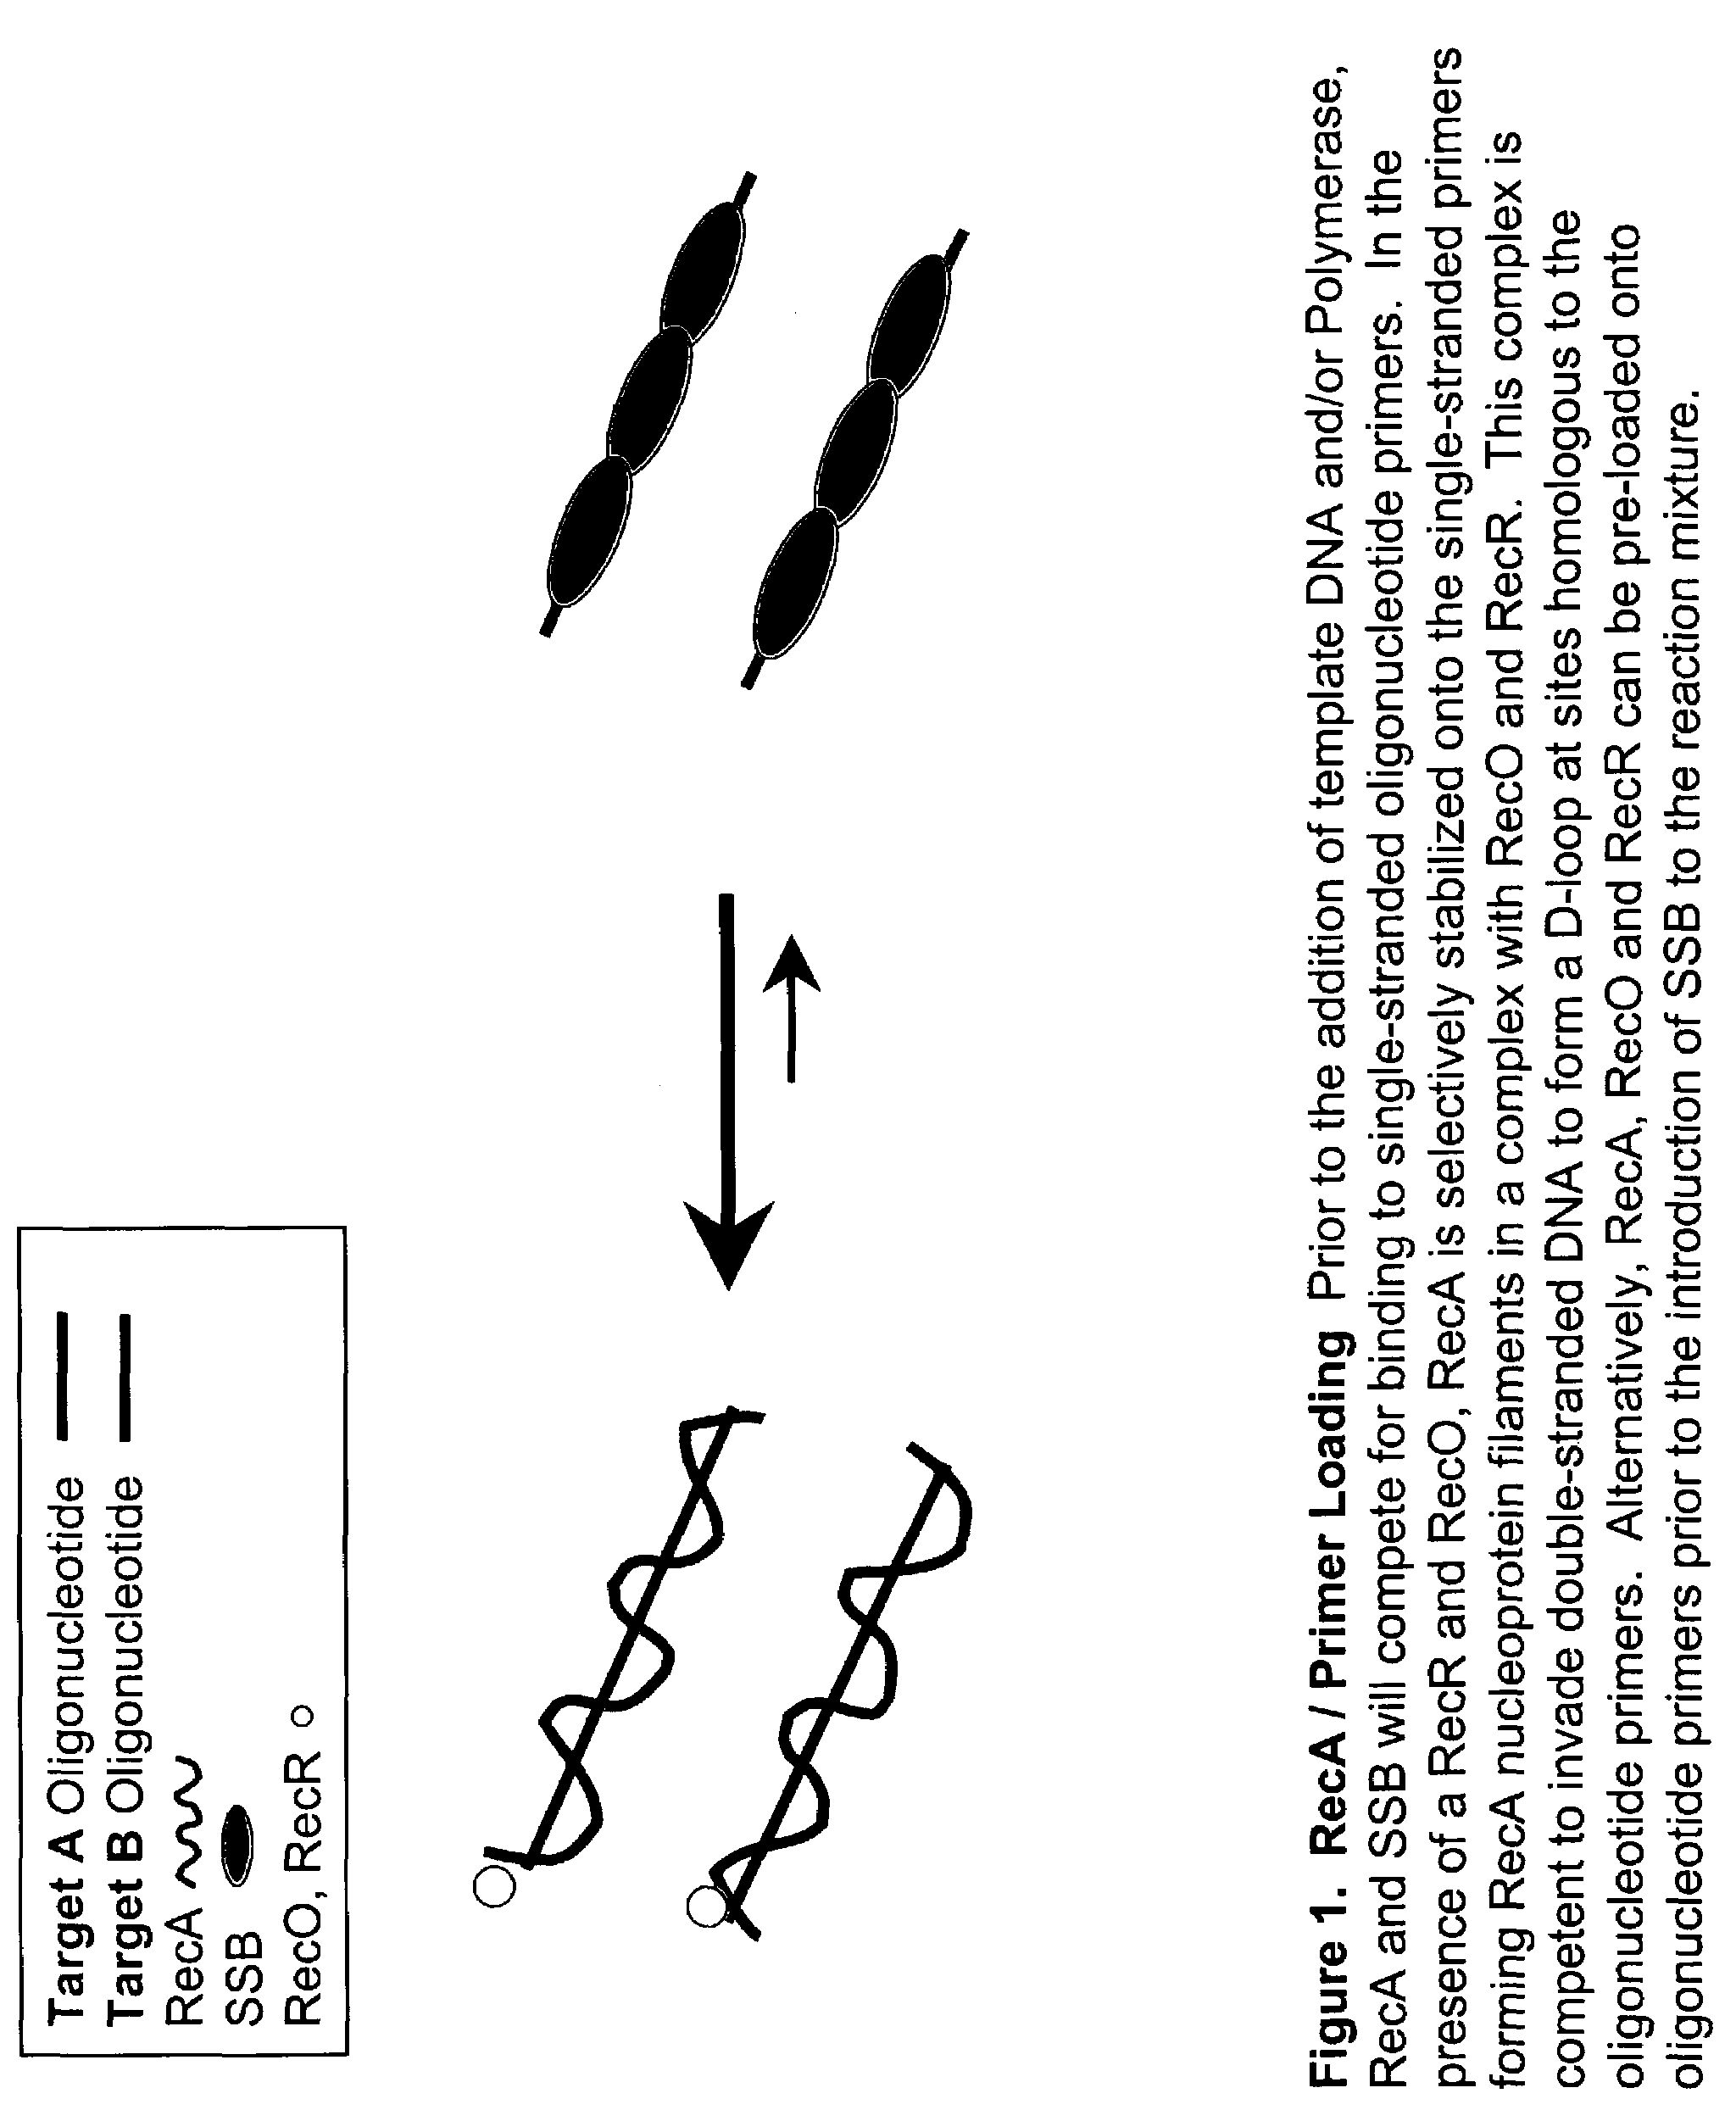 Recombinase polymerase amplification